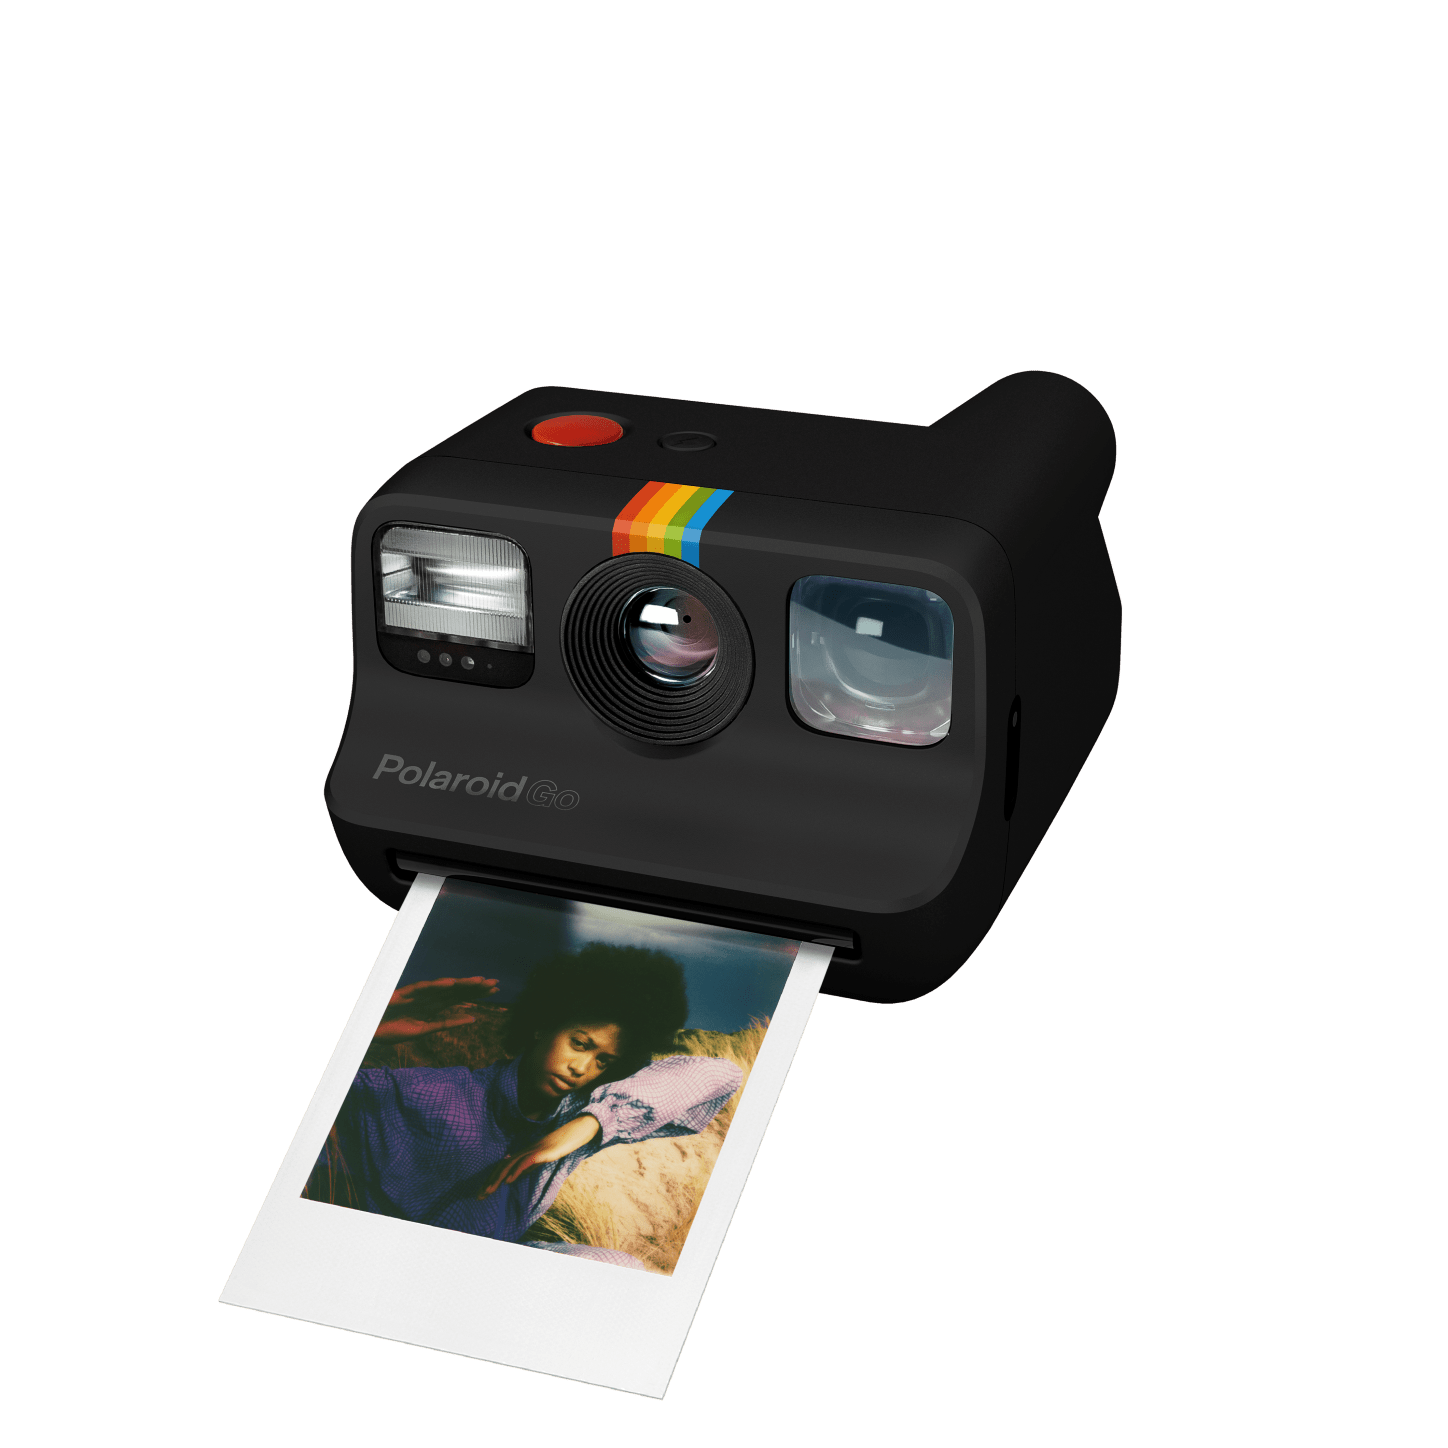 Le tout petit Polaroid Go // Source : Polaroid